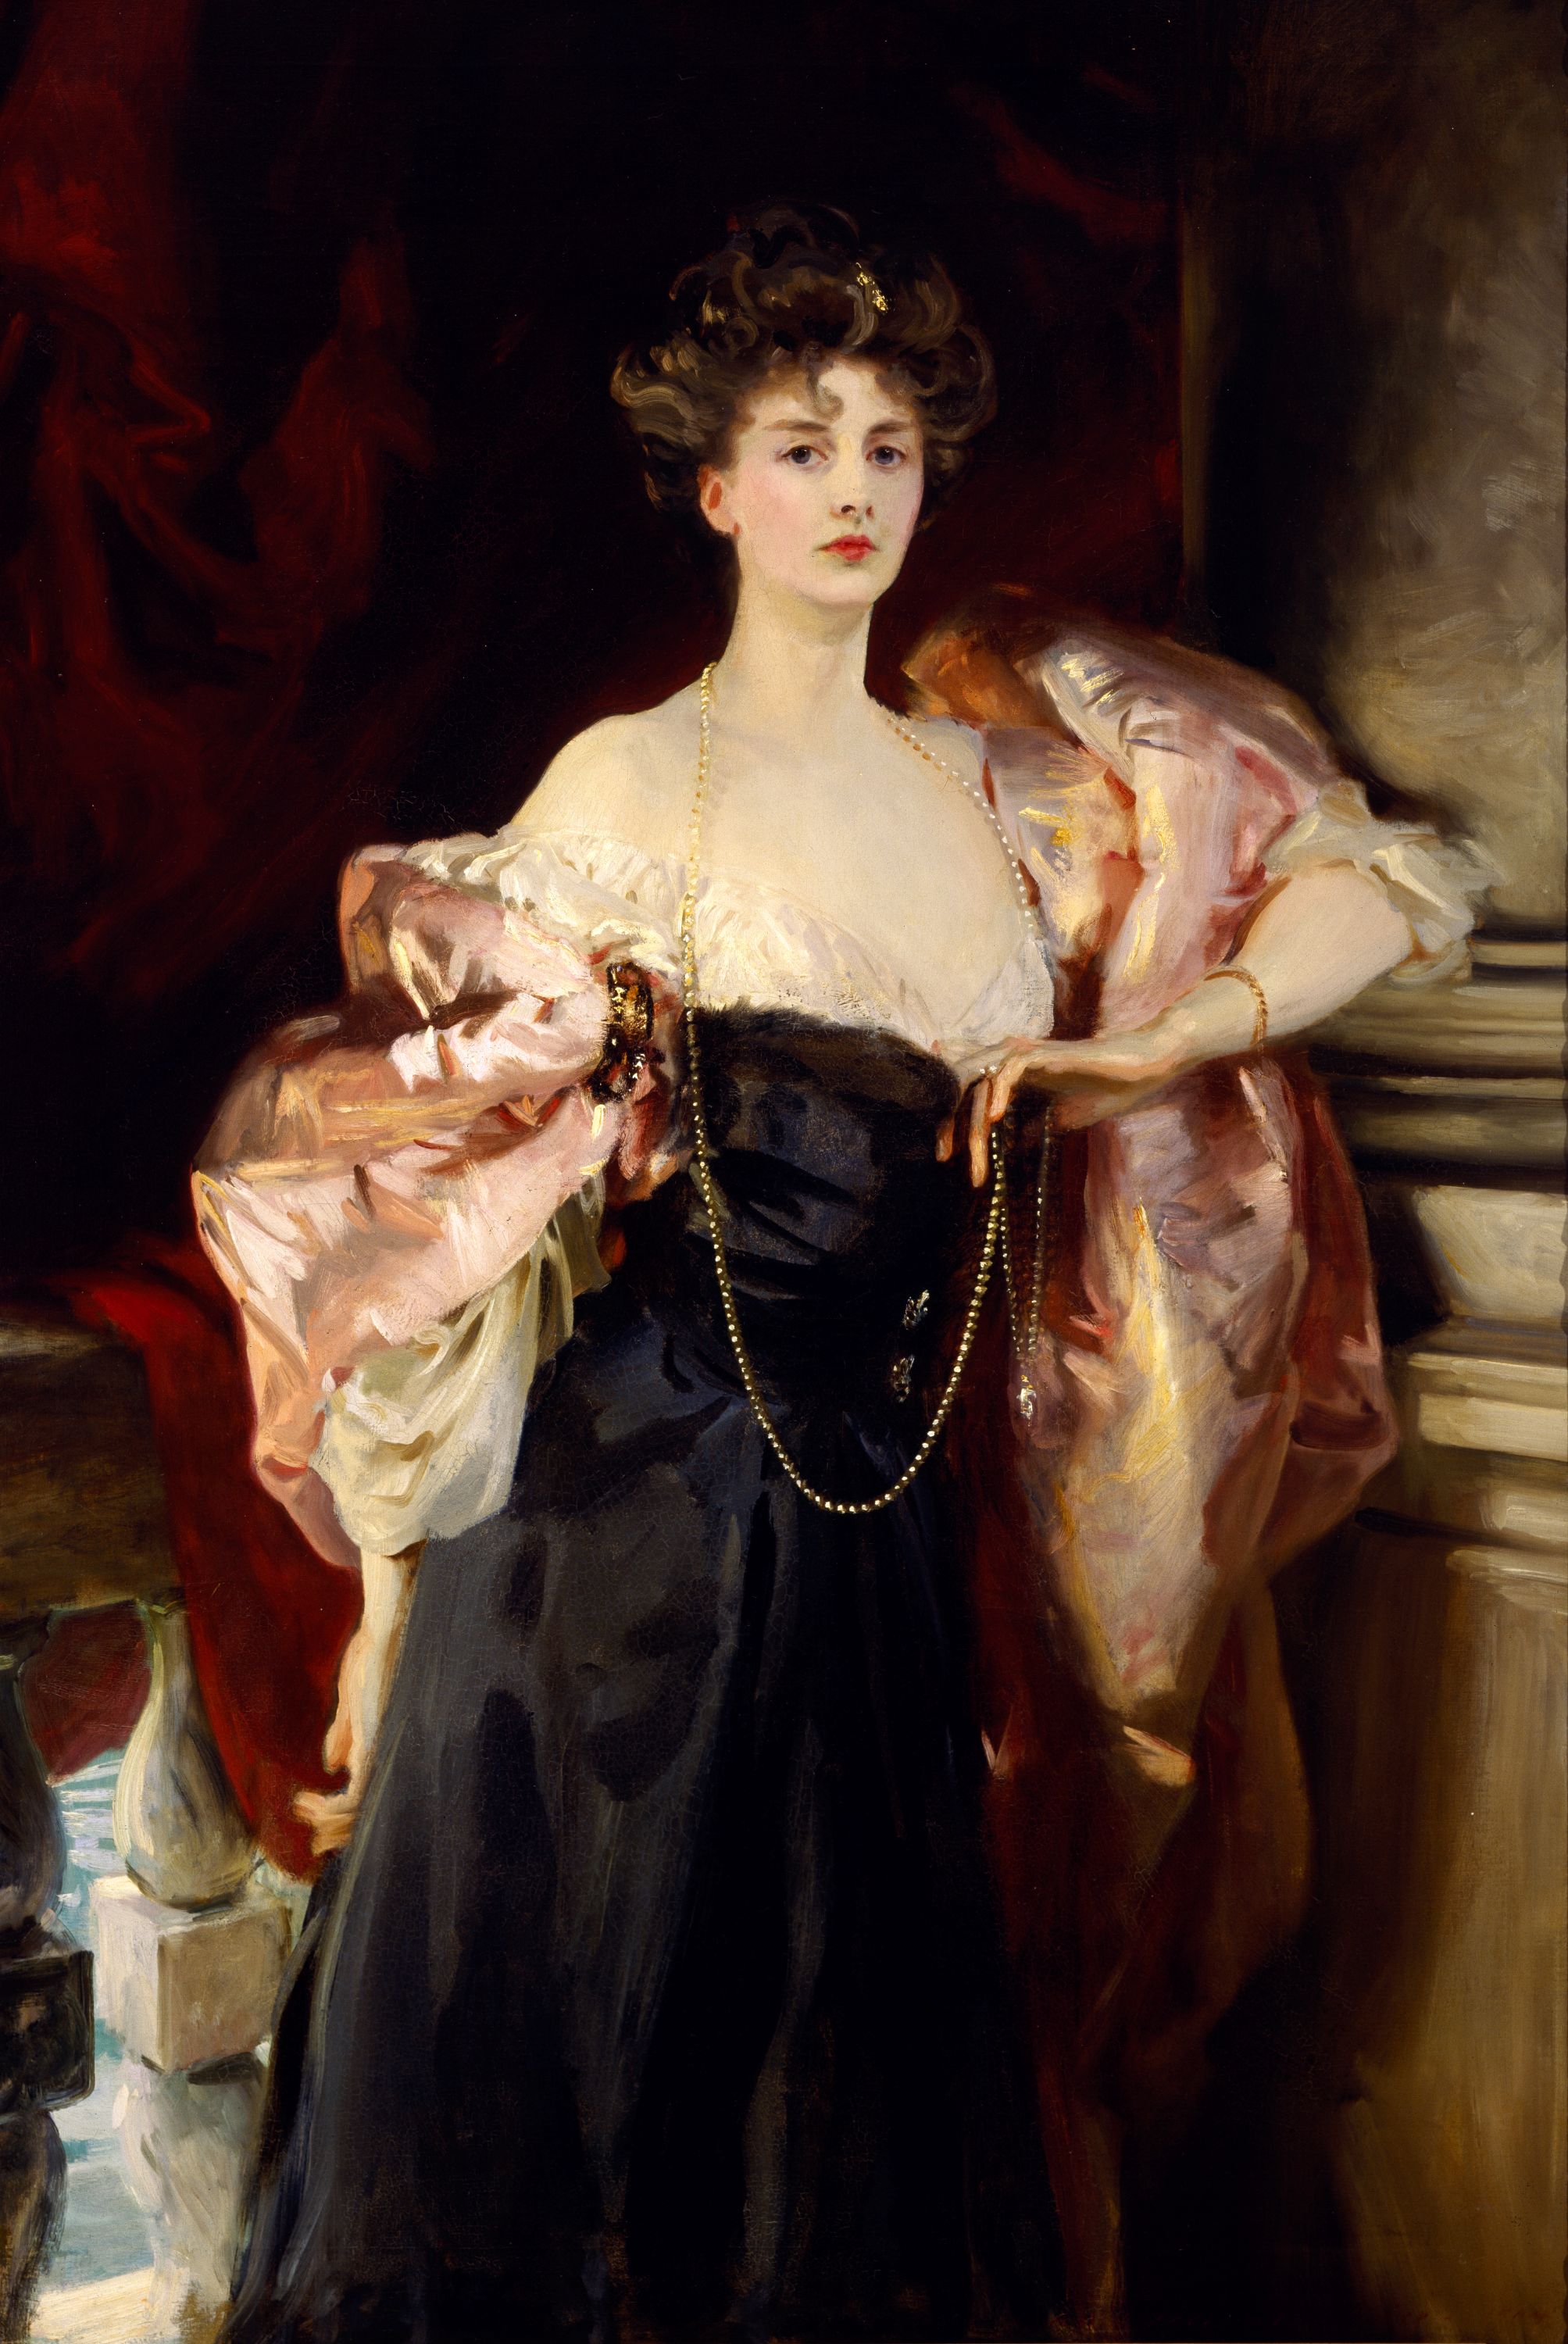 ヘレン・ヴィンセント夫人の肖像 by John Singer Sargent - 1904年 - 157.4 x 101.6 cm 